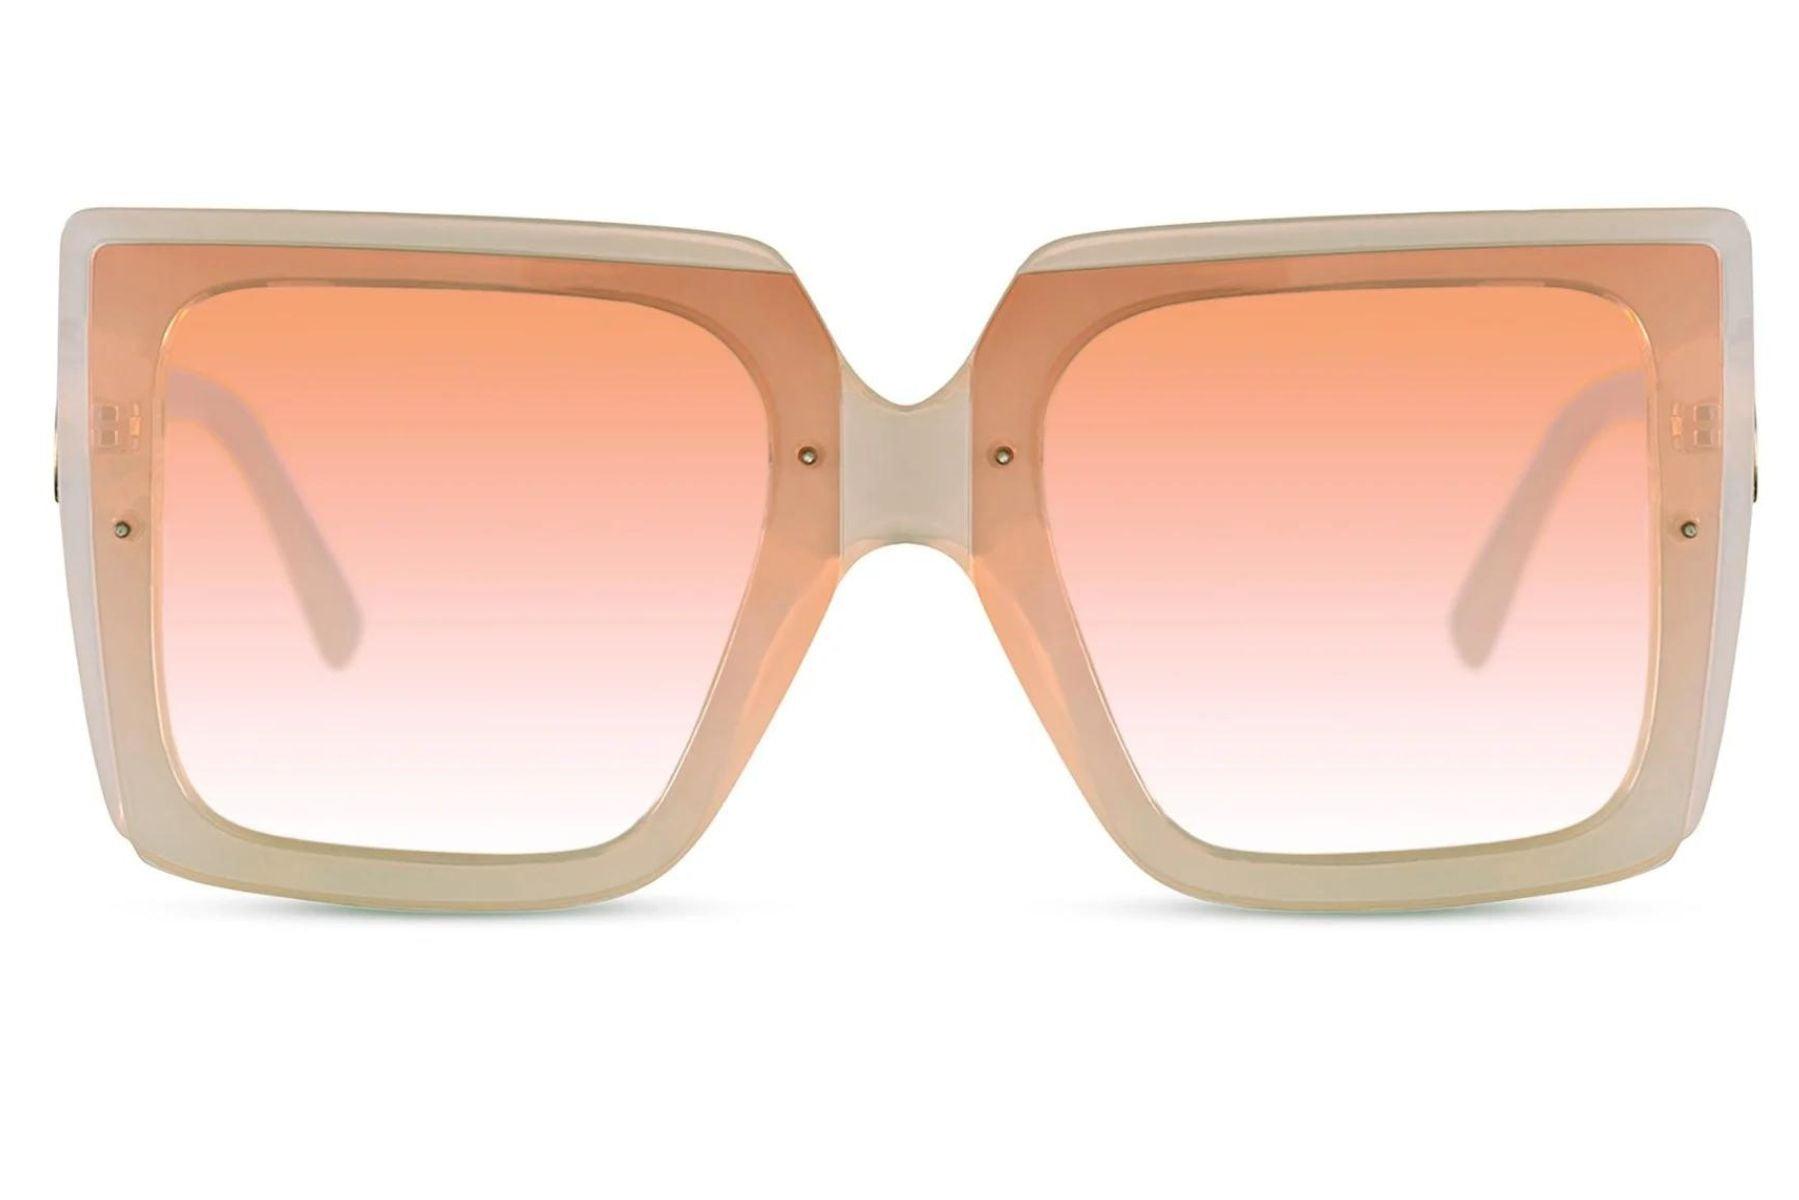 Kyo Oversized Square Beige Orange Sunglasses - Blissfully Brand - Translucent Retro Girly